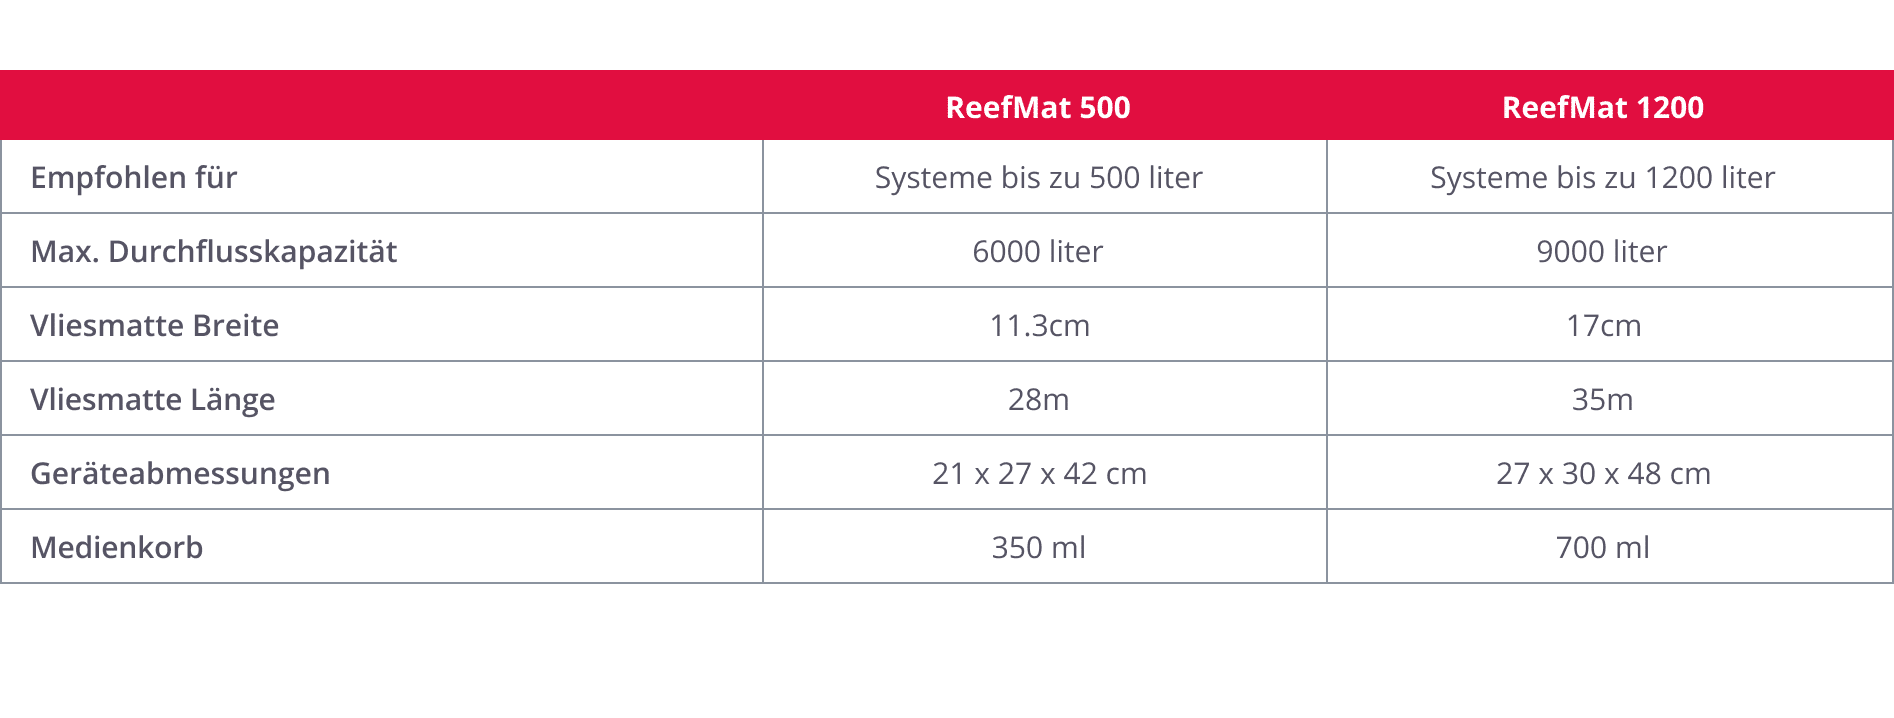 ReefMat 500 (services cloud inclus)